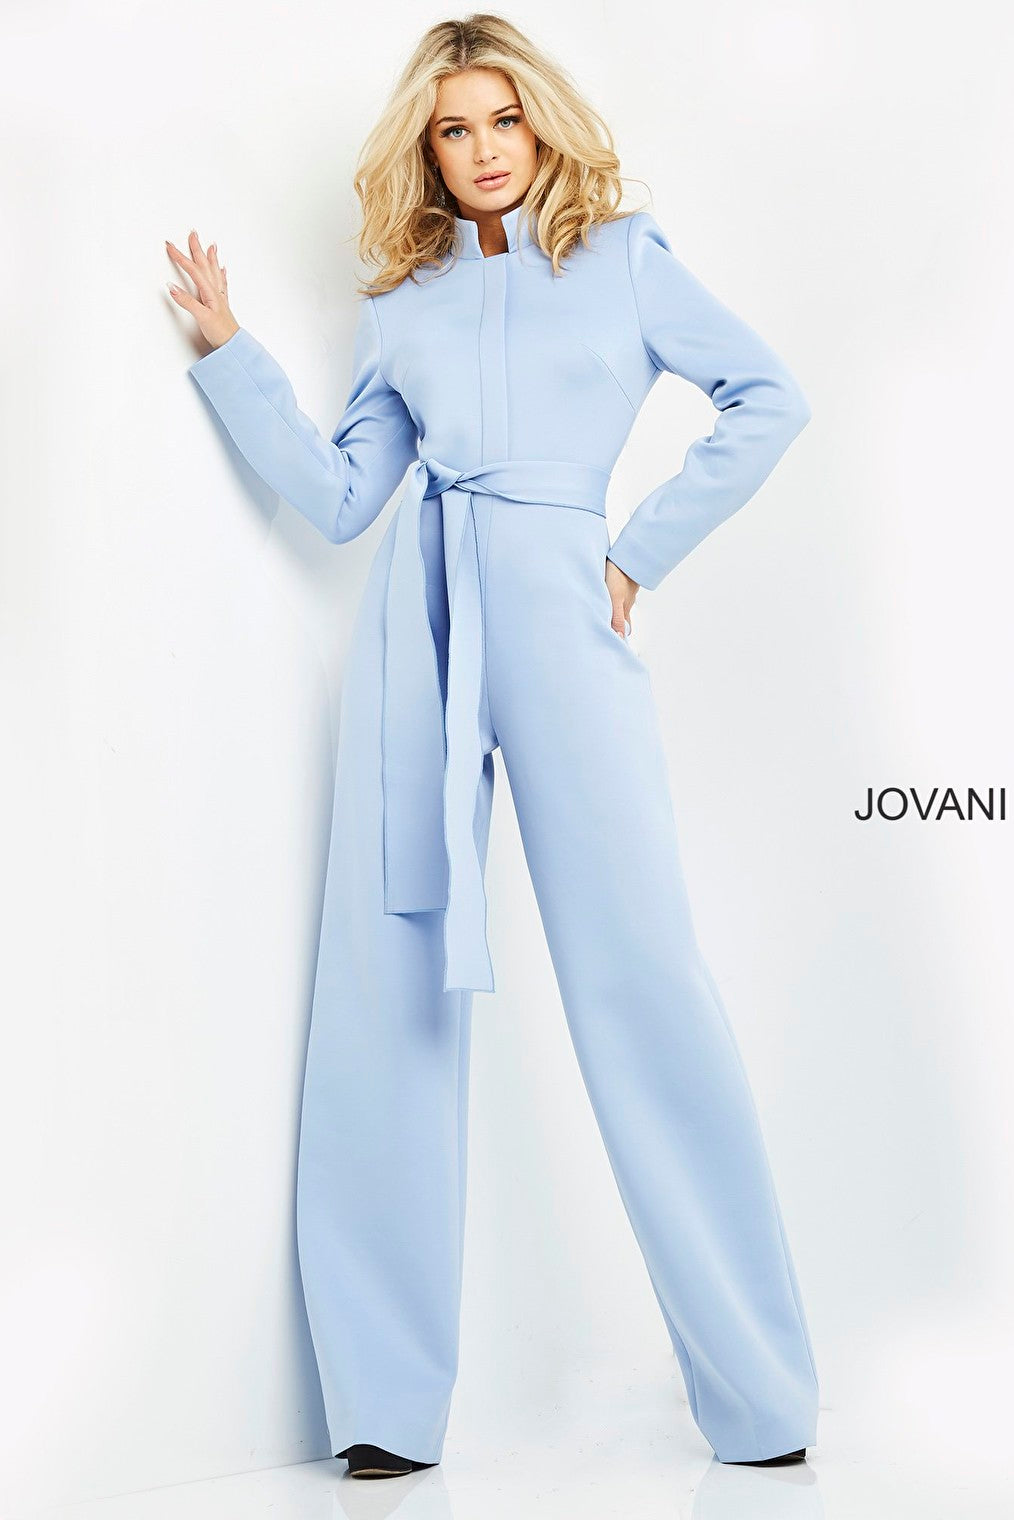 Jovani light blue scuba contemporary jumpsuit 06205